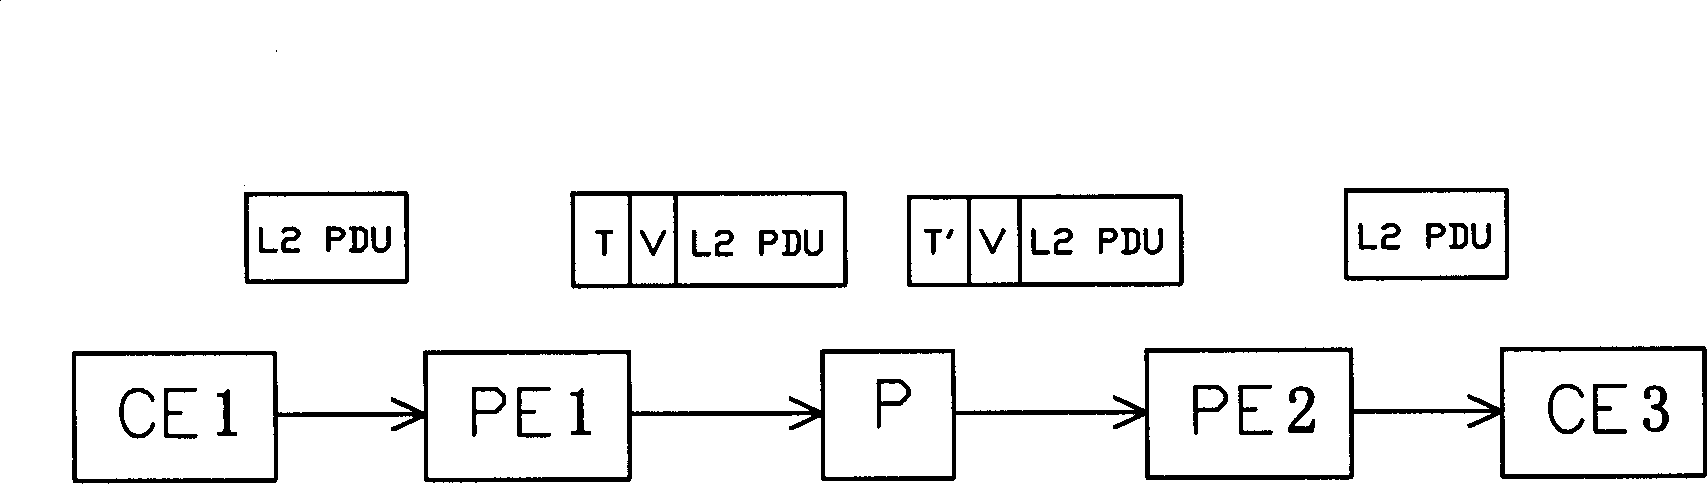 Network transmission method for multi-protocol label exchange VPN